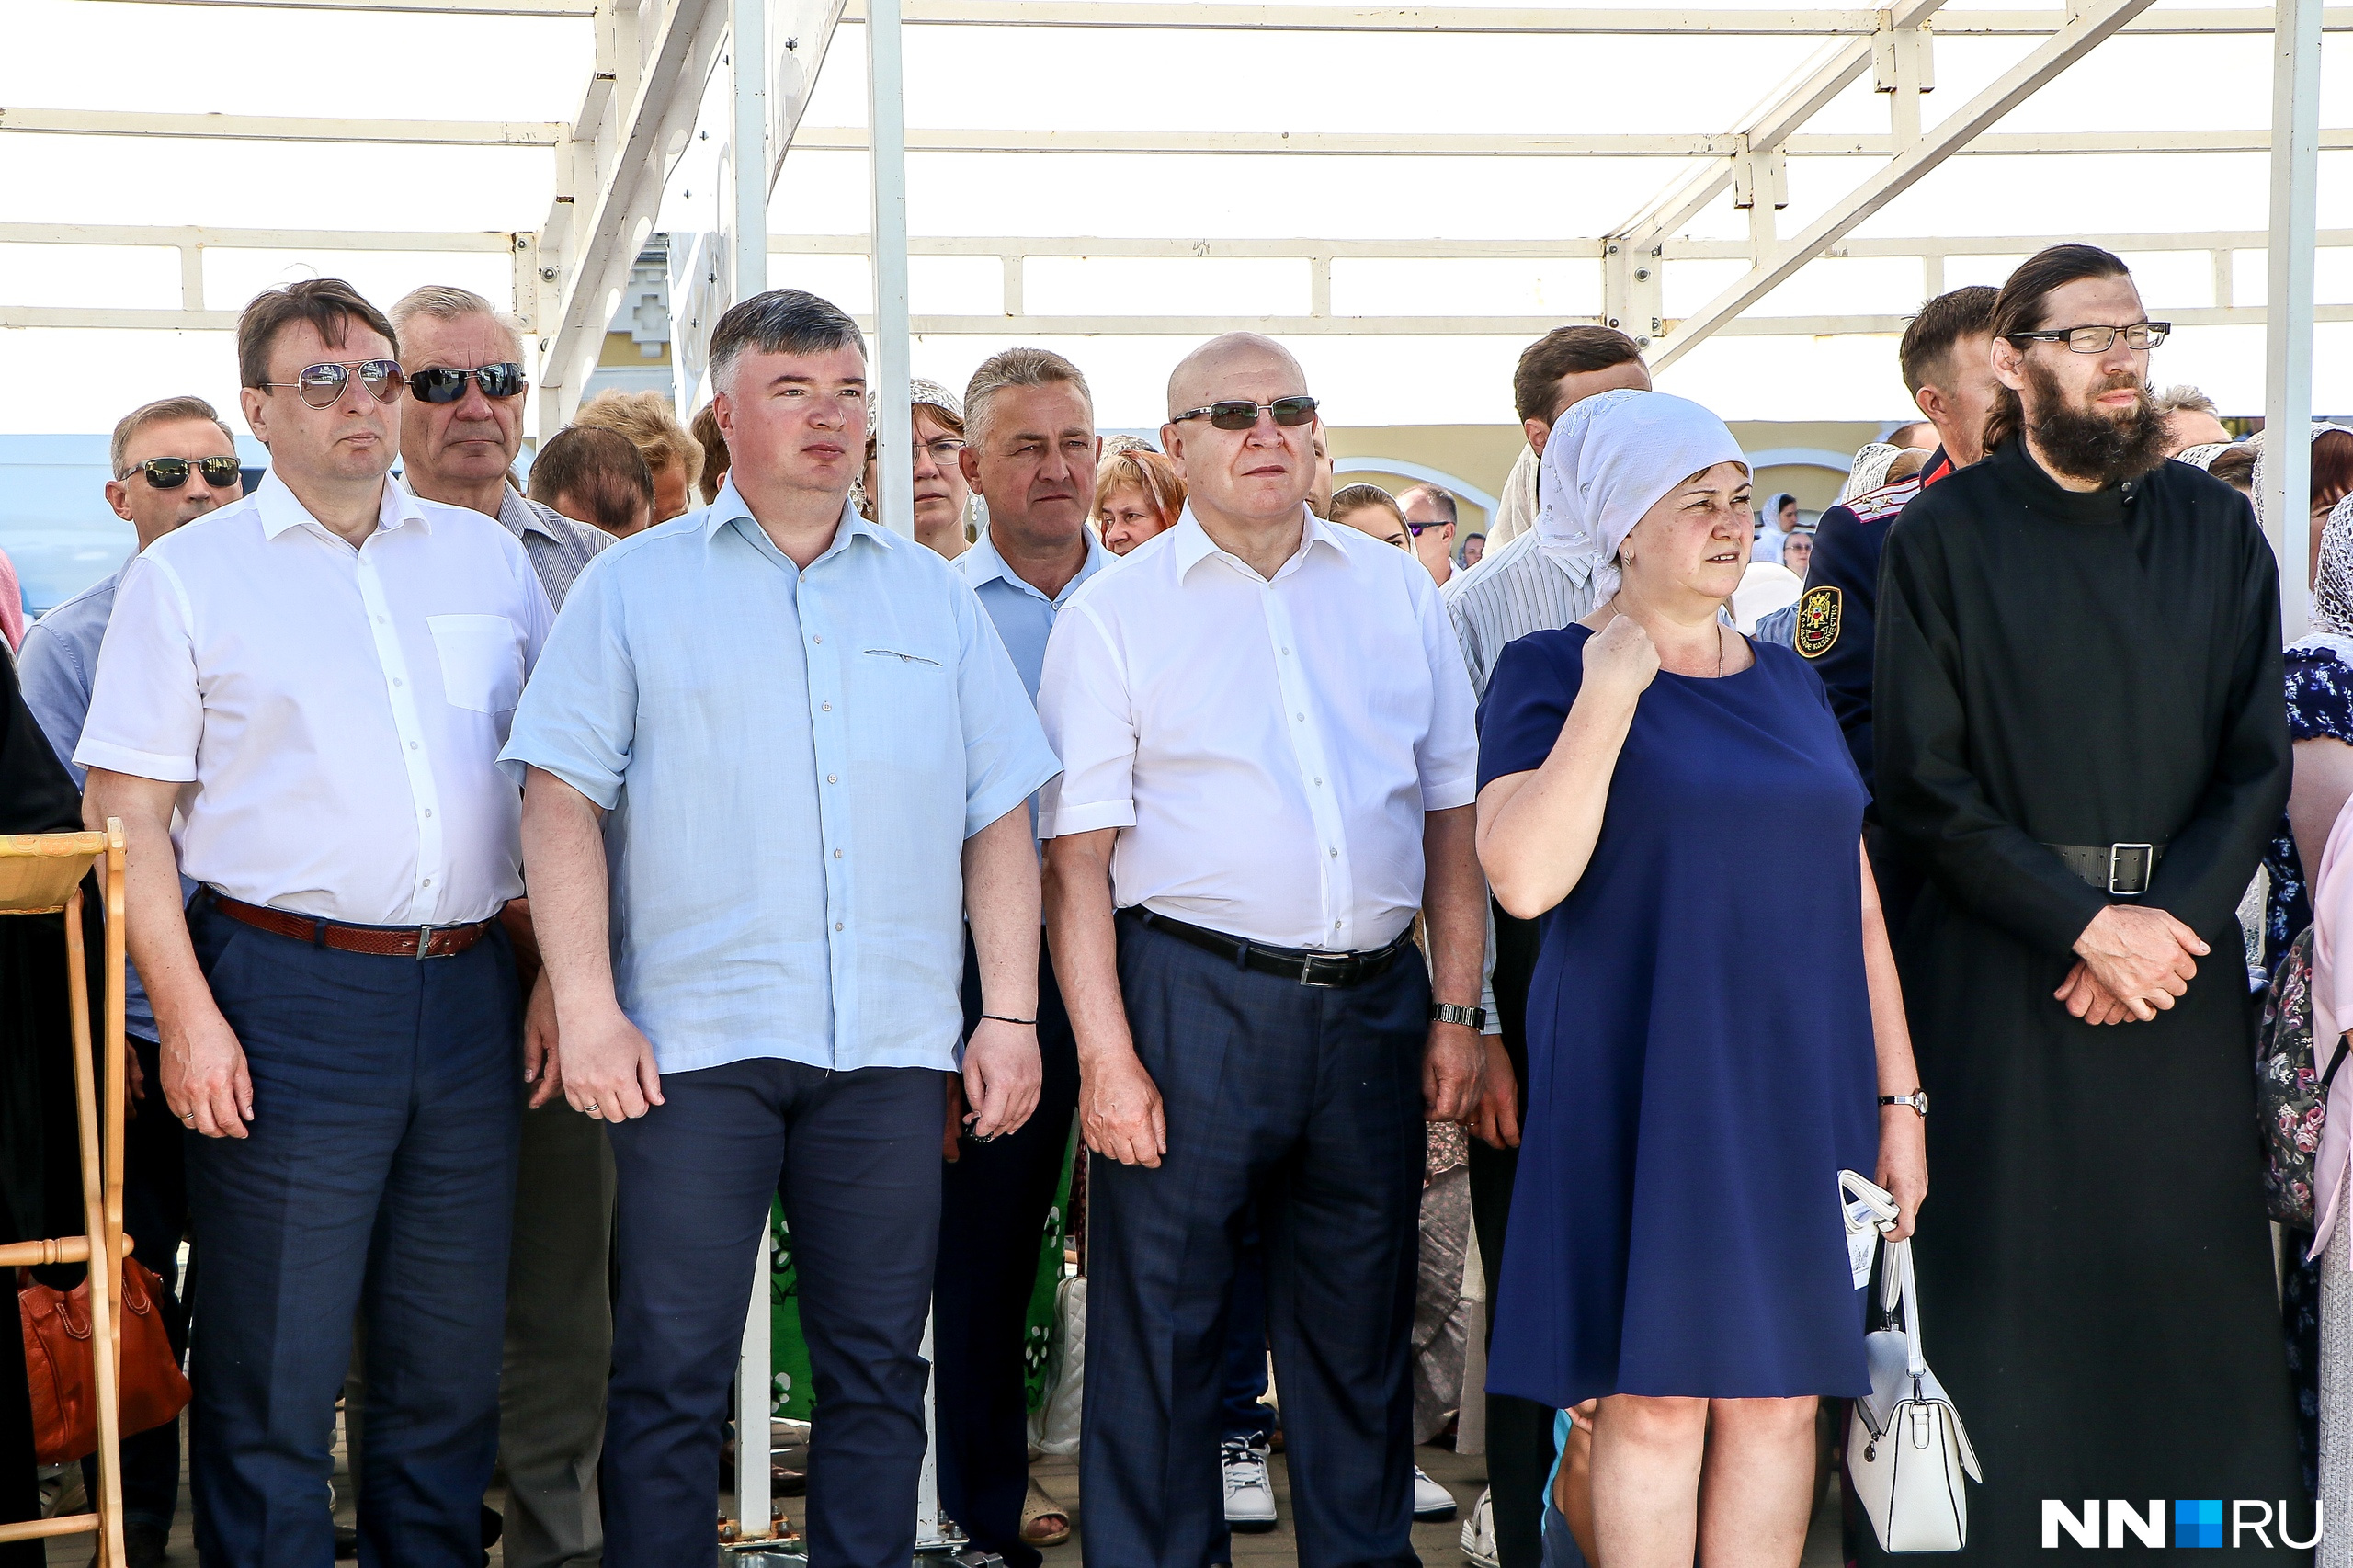 Экс-губернатор Нижегородской области появился на празднике